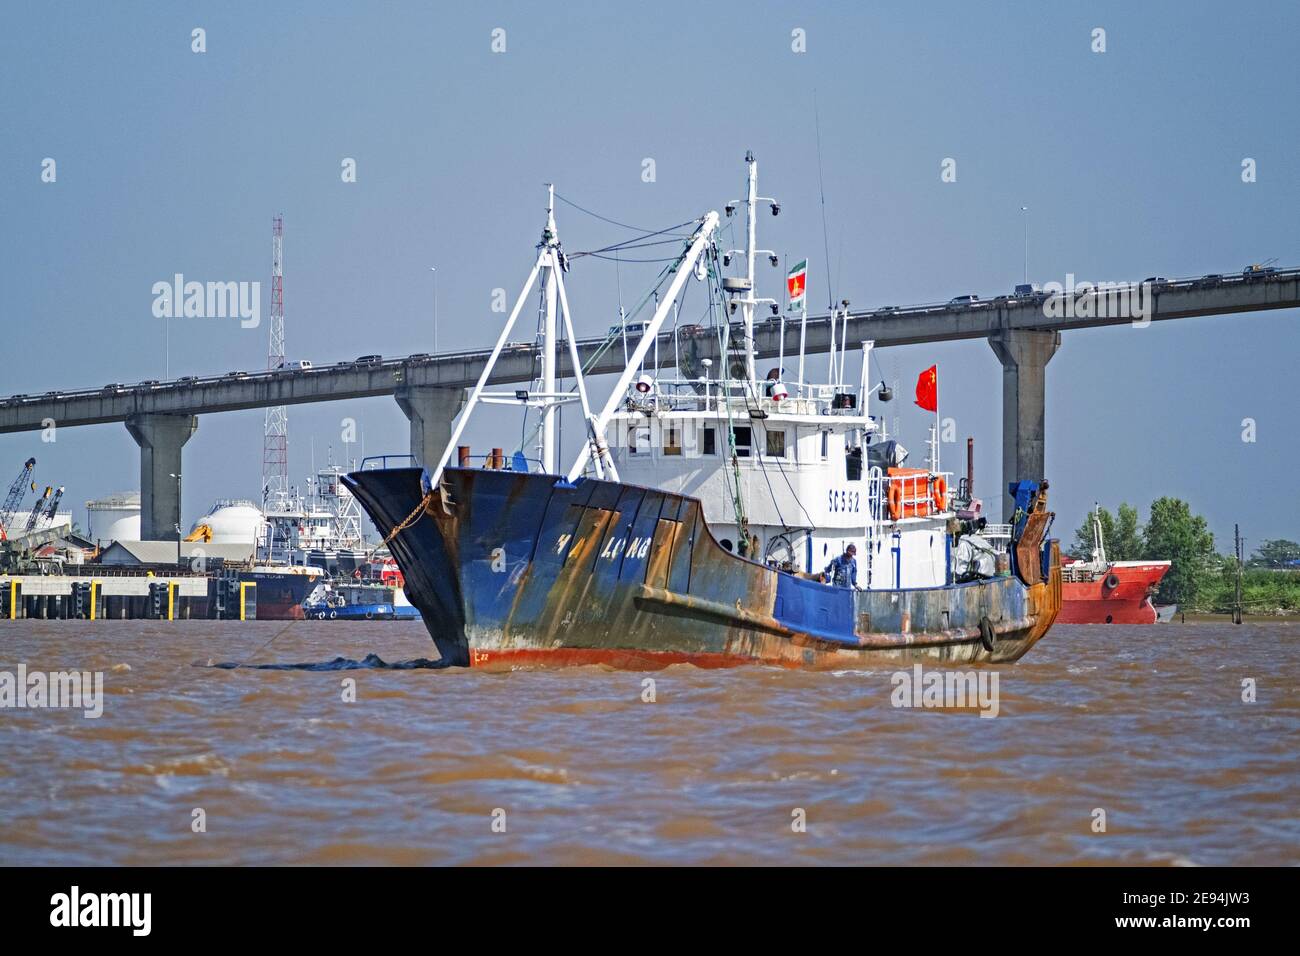 Bateau de pêche / chalutier naviguant sous le pont Jules Wijdenbosch / Bosje Brug sur le fleuve Suriname à Paramaribo, Suriname / Surinam Banque D'Images